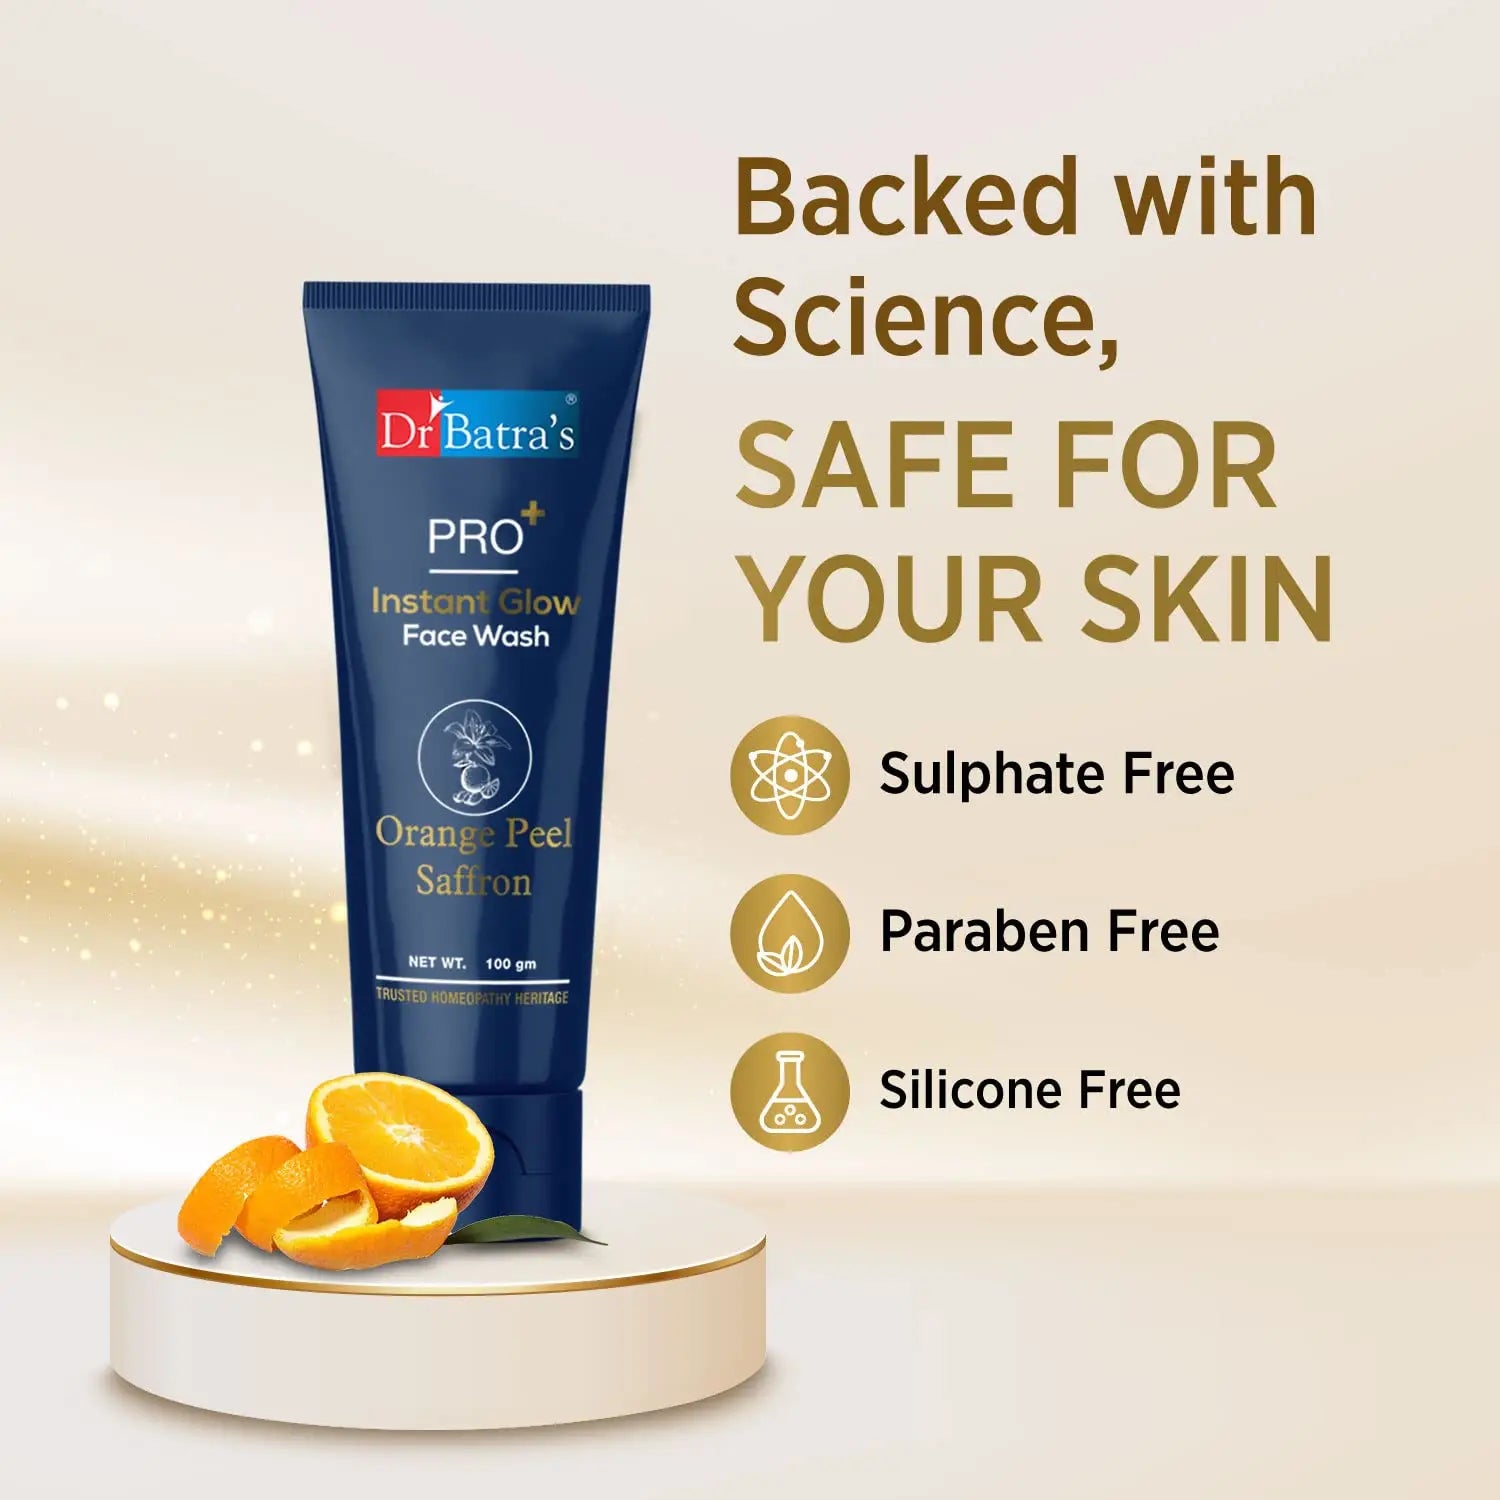 Dr Batra’s® PRO+ Instant Glow Face Wash